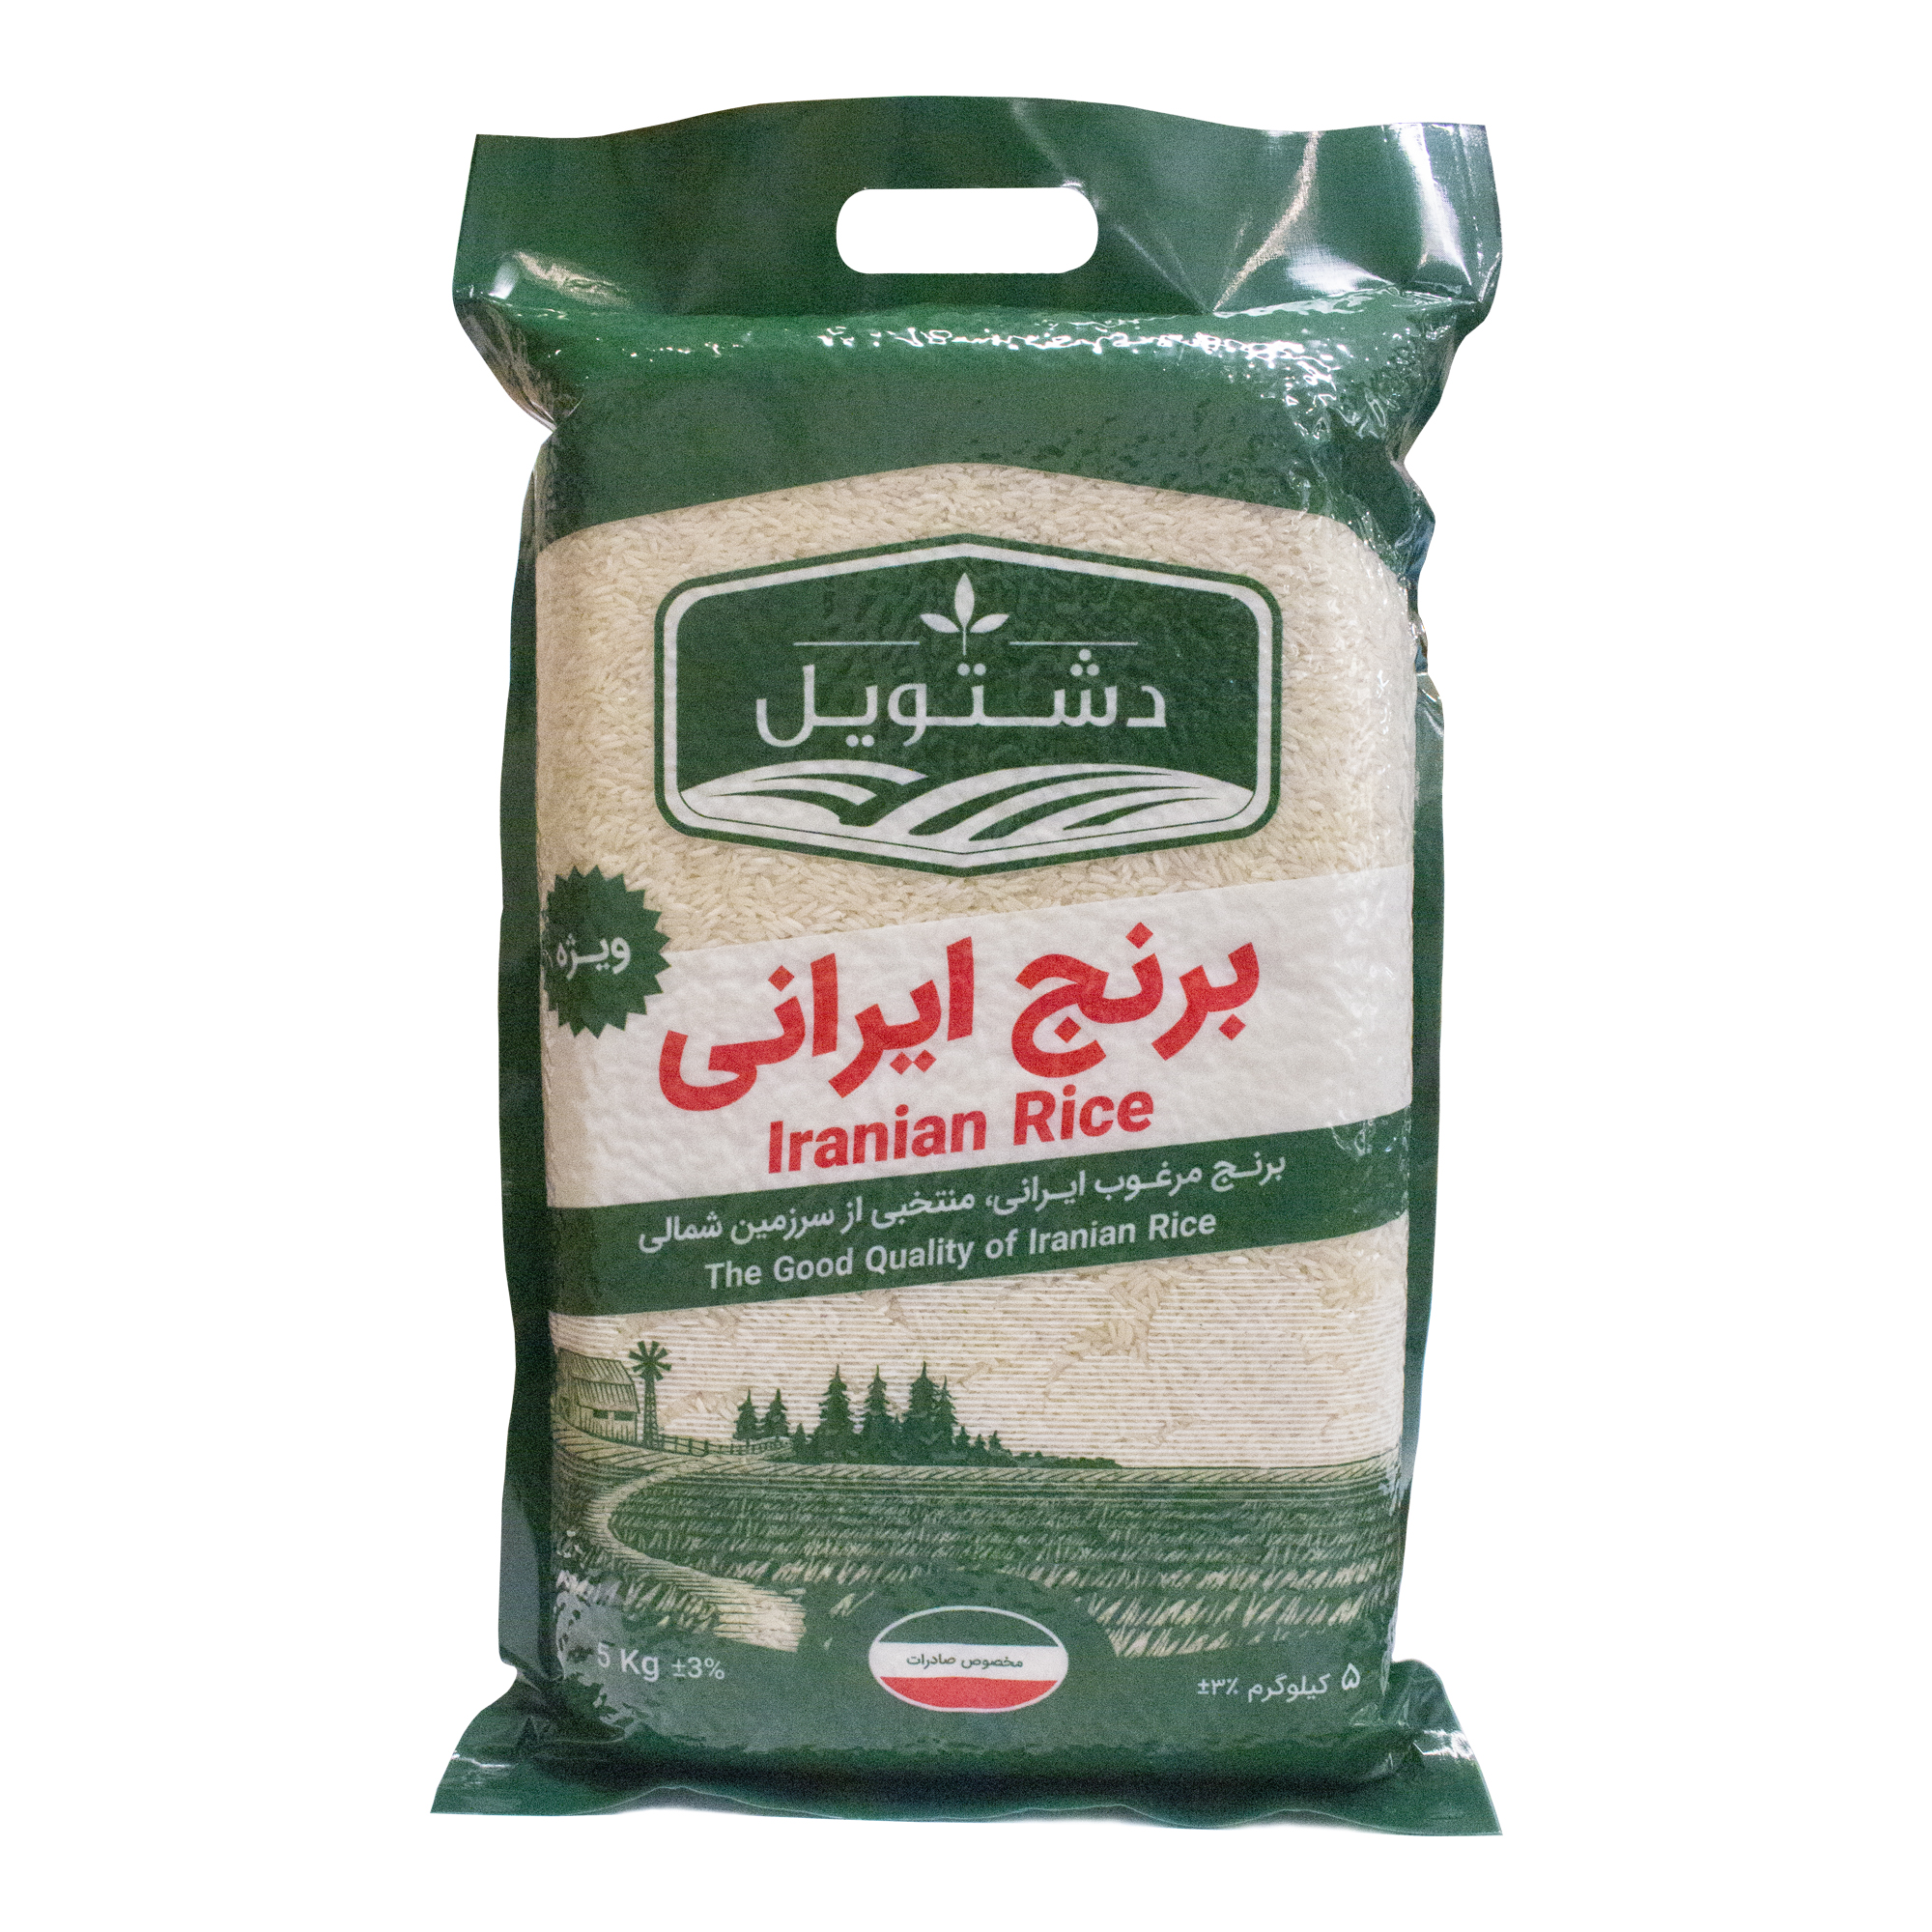 نکته خرید - قیمت روز برنج ایرانی دشتویل - 5 کیلوگرم خرید